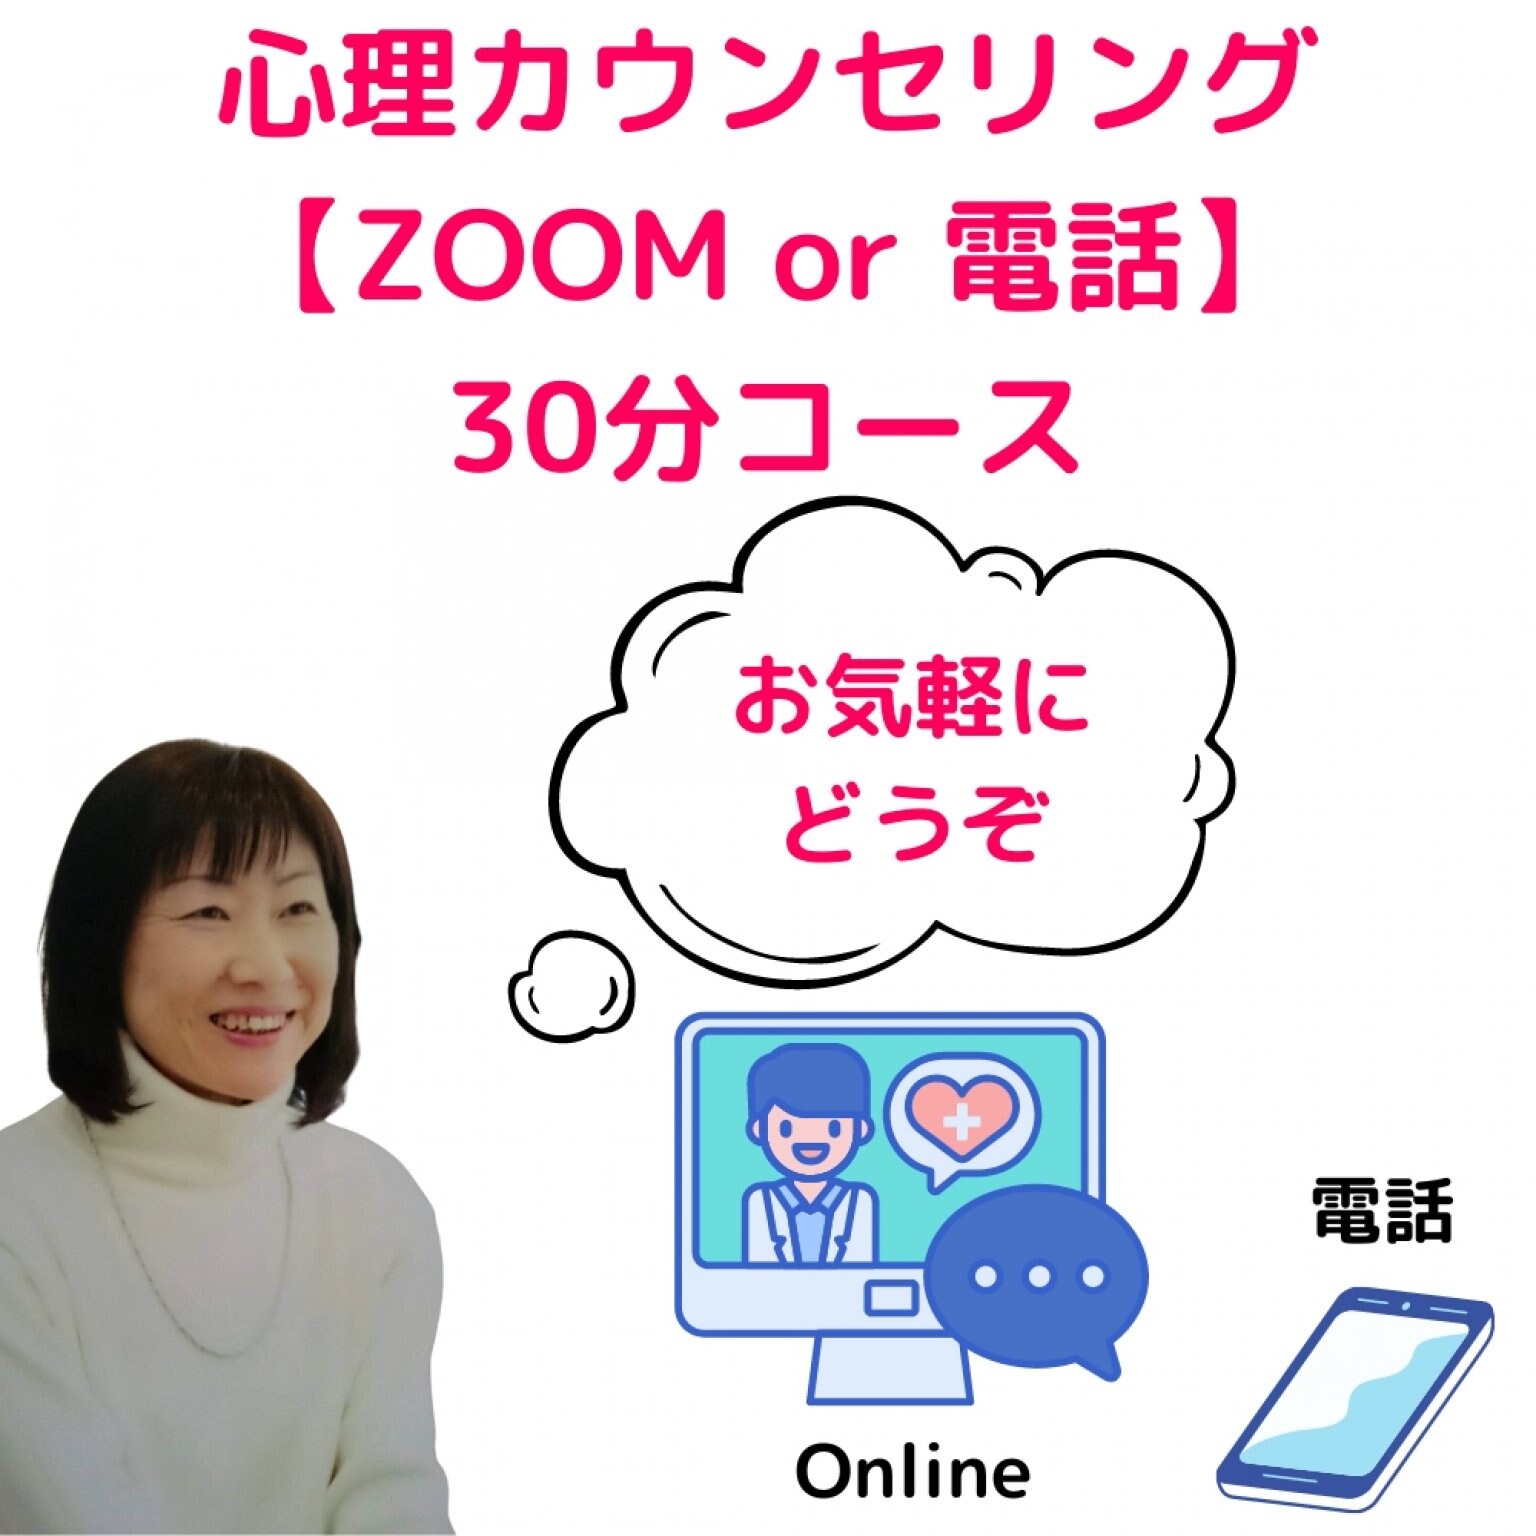 【ZOOM or 電話:30分コース】心理カウンセリング